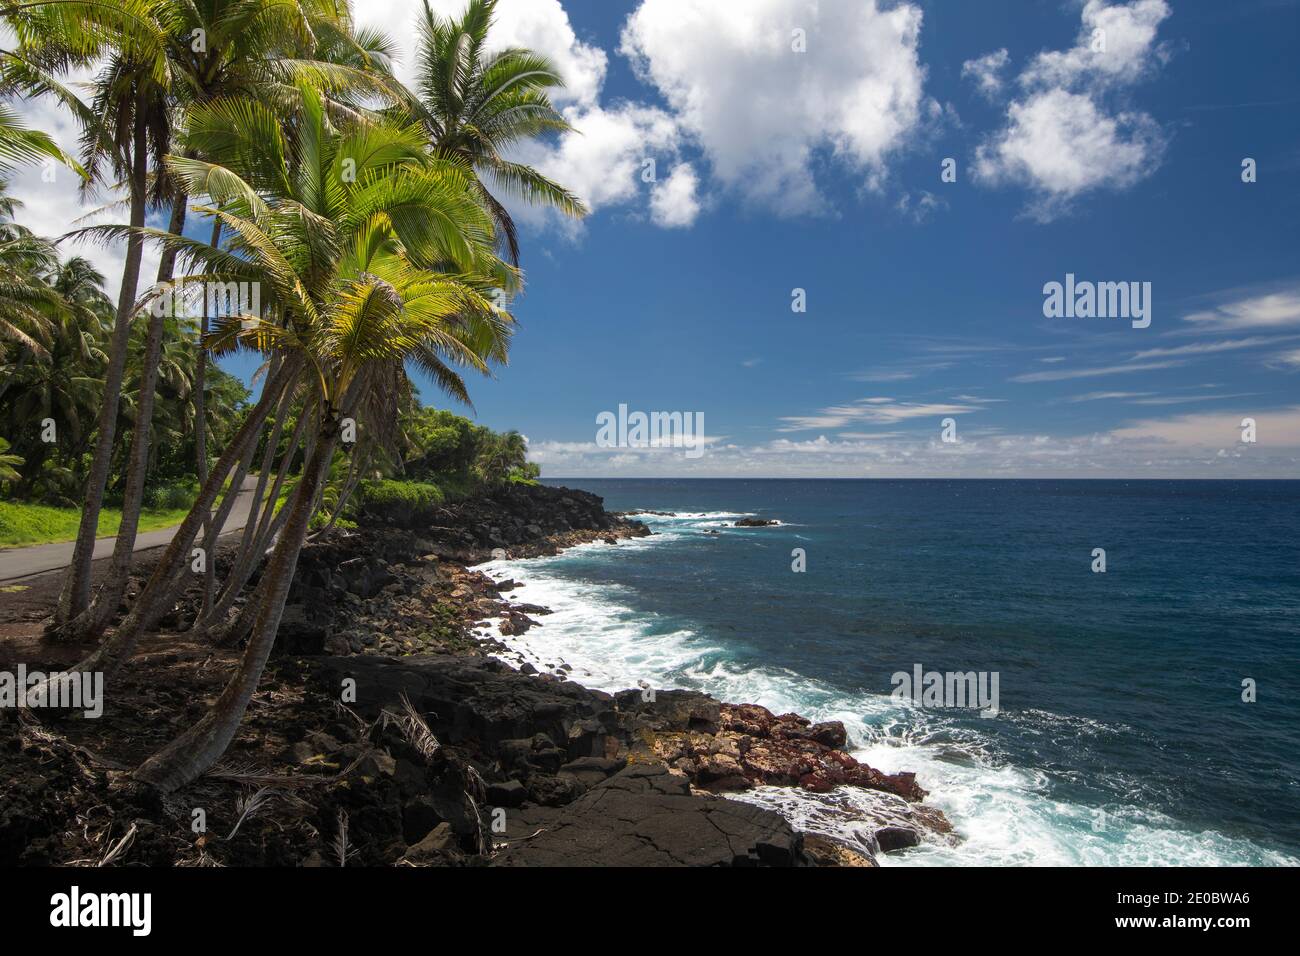 Palm trees and coastline on road side. Puna, south coast, Big Island Hawaii Stock Photo